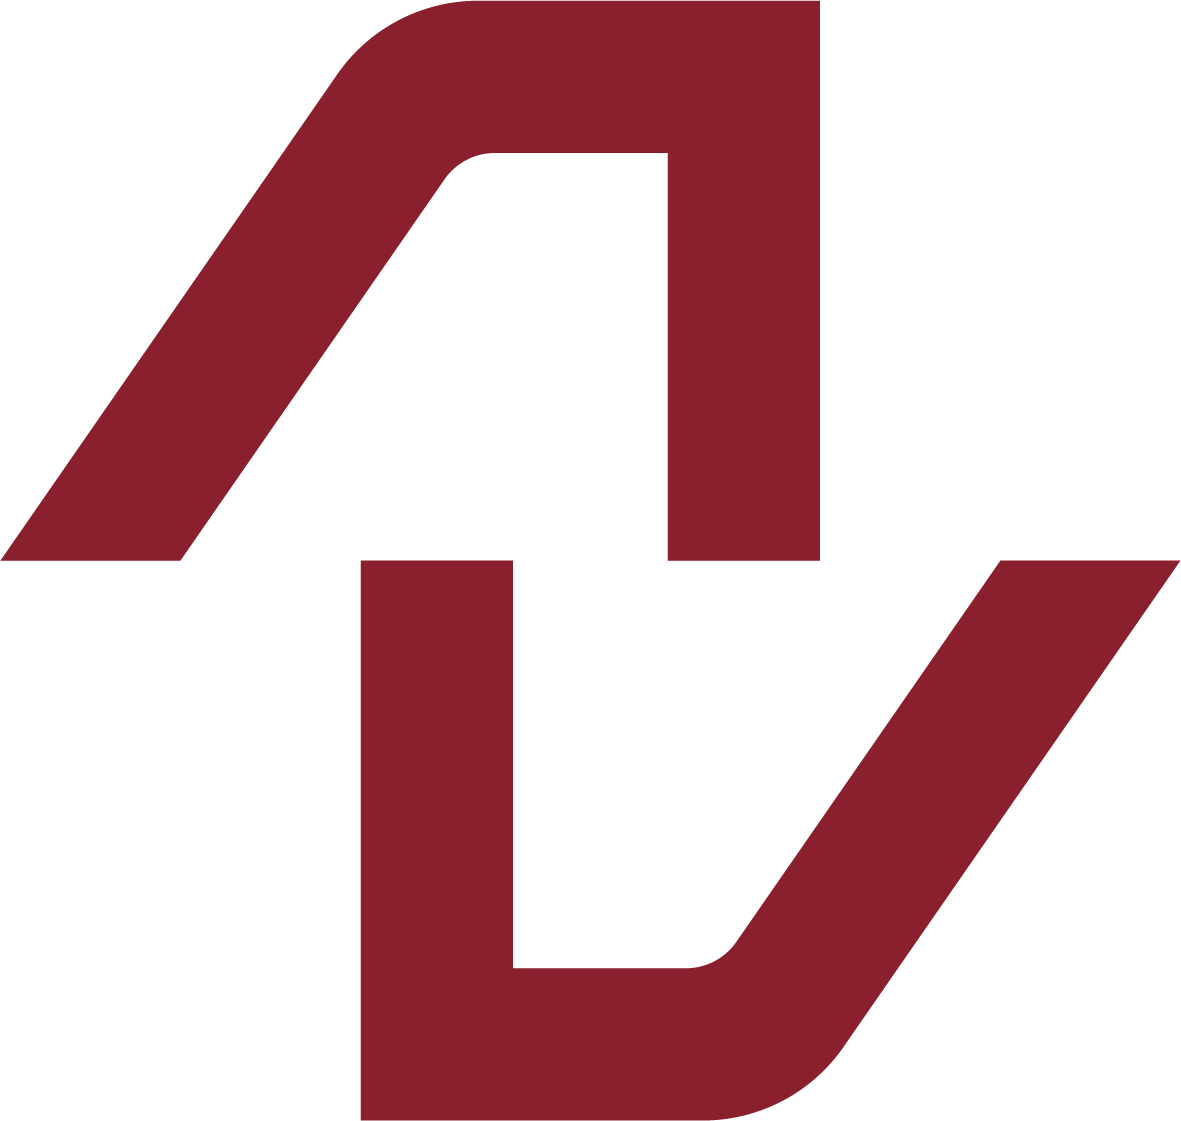 APS logo icon